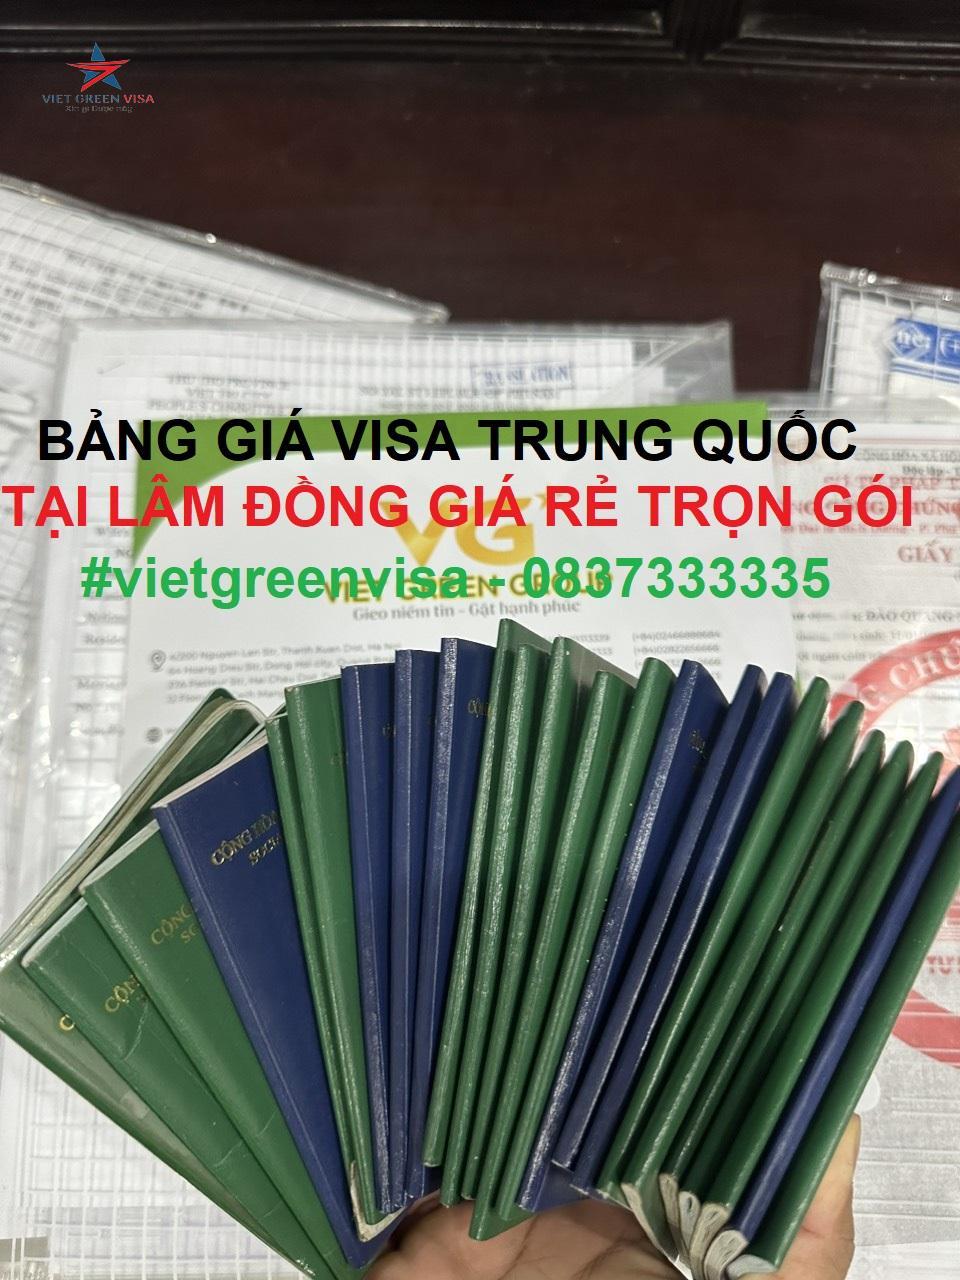 Dịch vụ xin visa Trung Quốc tại Lâm Đồng giá rẻ